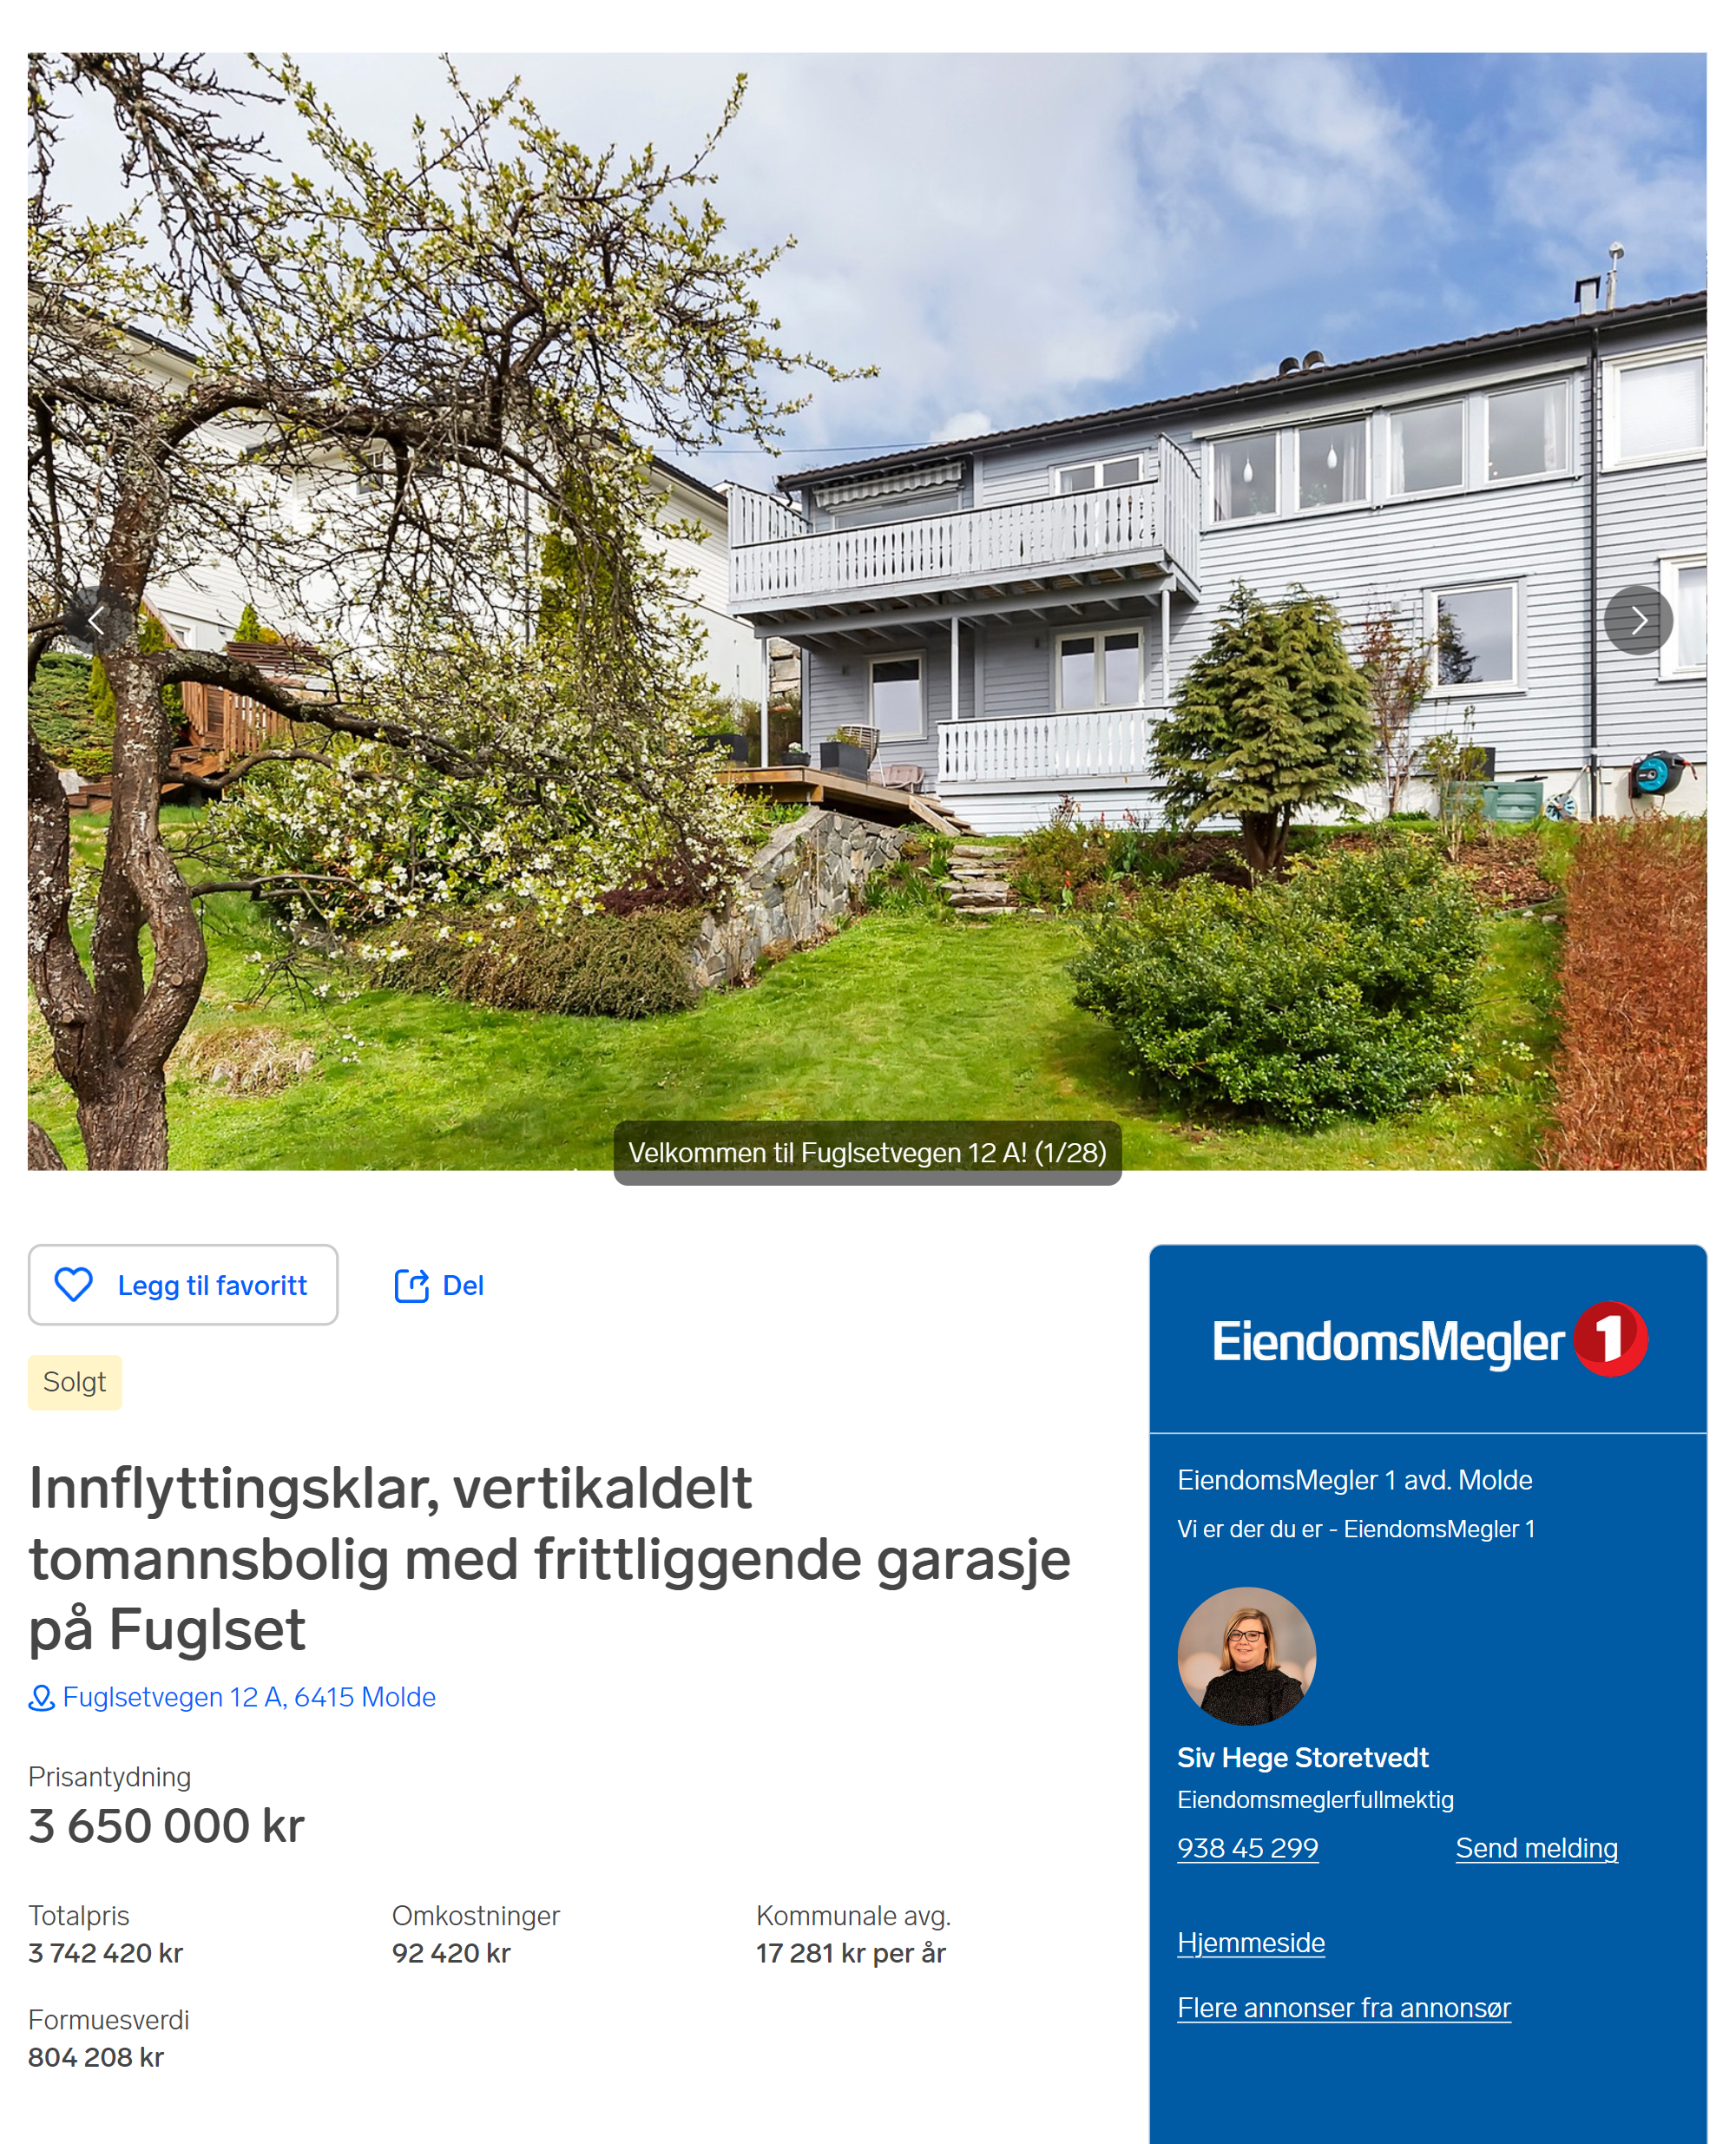 Пример аналогичного дома на продажу в Молде в 2023 году. Источник: finn.no